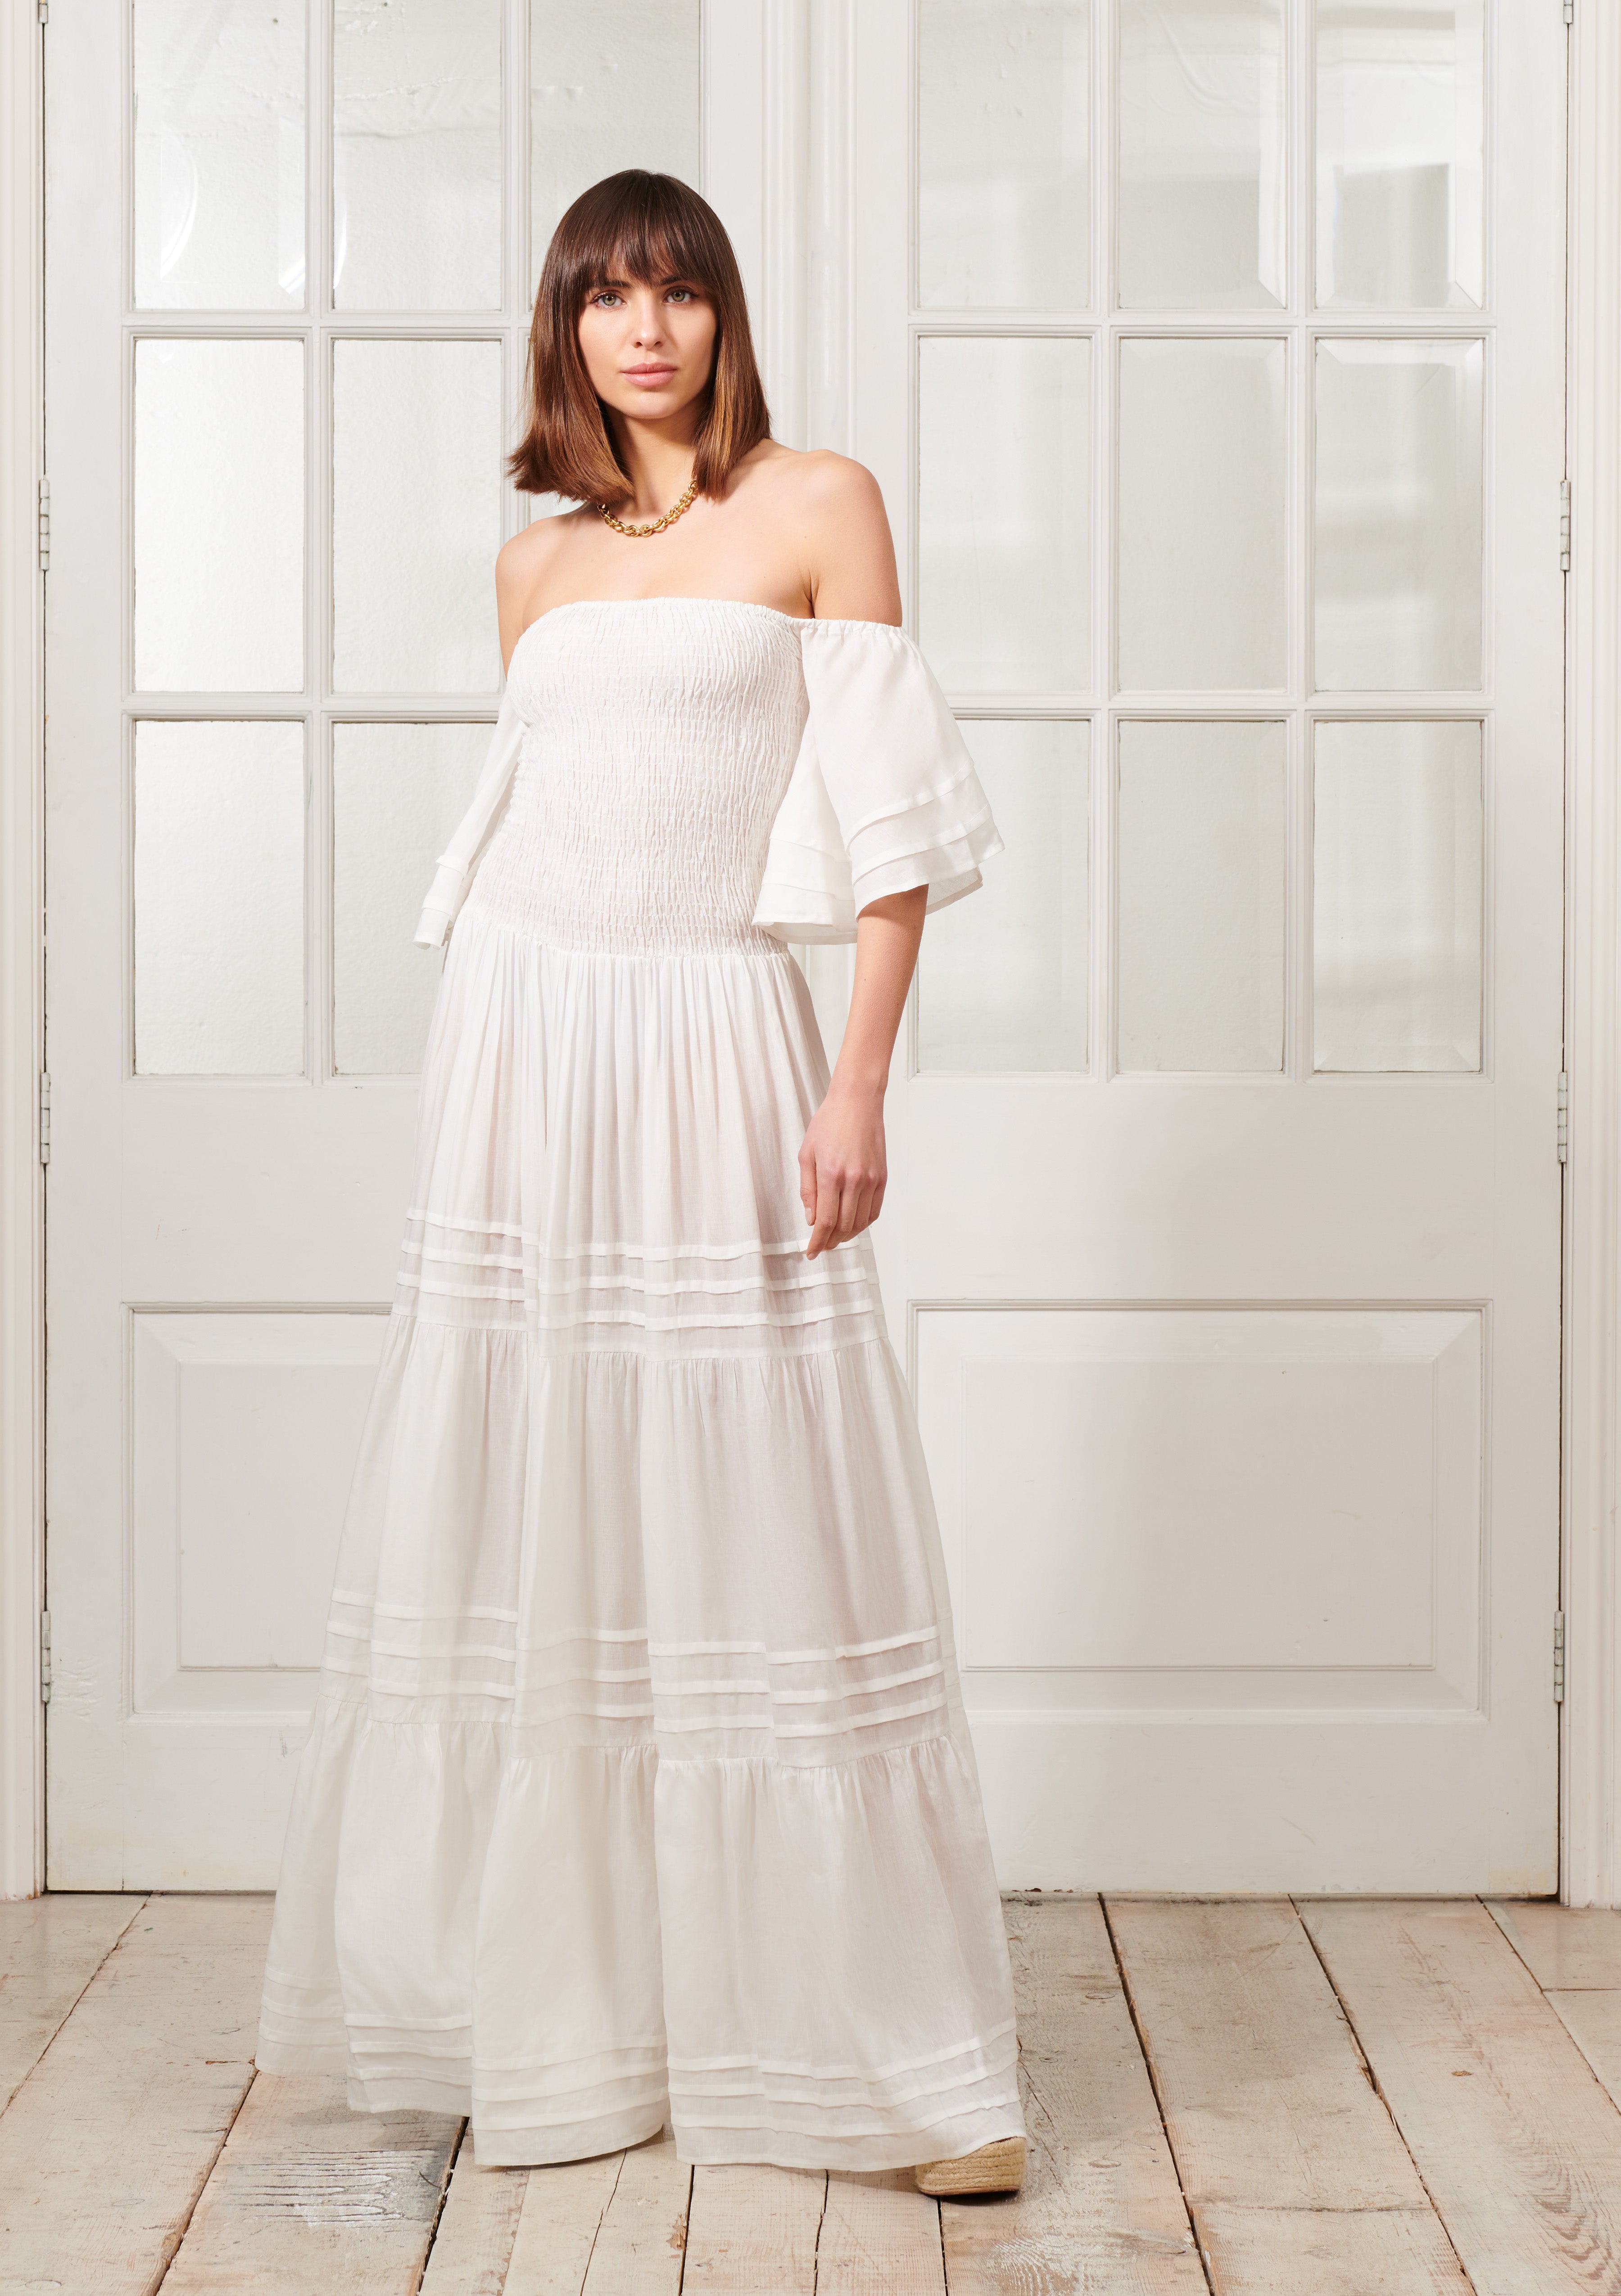 EVARAE VALENTINA DRESS IN LENZING LINEN - SOFT WHITE